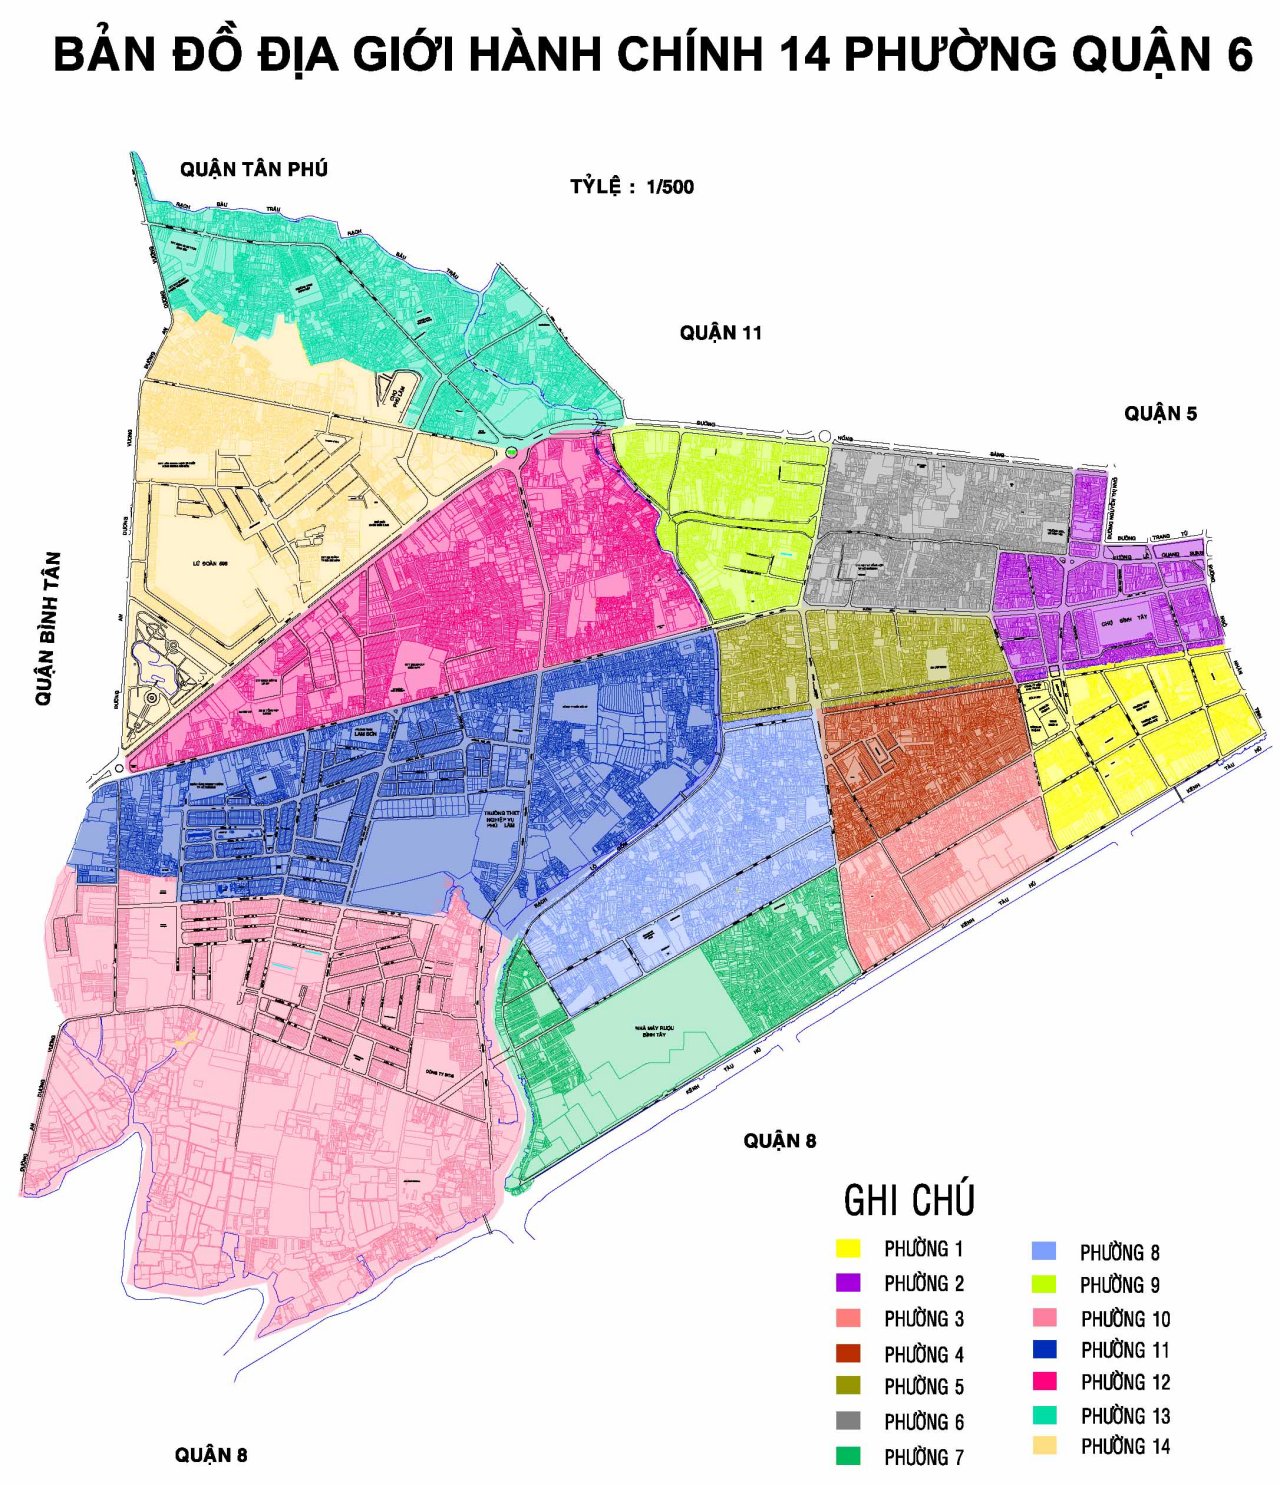 Nếu bạn đang tìm kiếm một cửa hàng bán bản đồ quận 4 tại thành phố Hồ Chí Minh, chúng tôi sẽ giúp bạn tìm được suất sắc nhất. Chúng tôi cung cấp những bản đồ chính xác và chi tiết nhất để giúp bạn định vị nơi mình cần đến trong quận